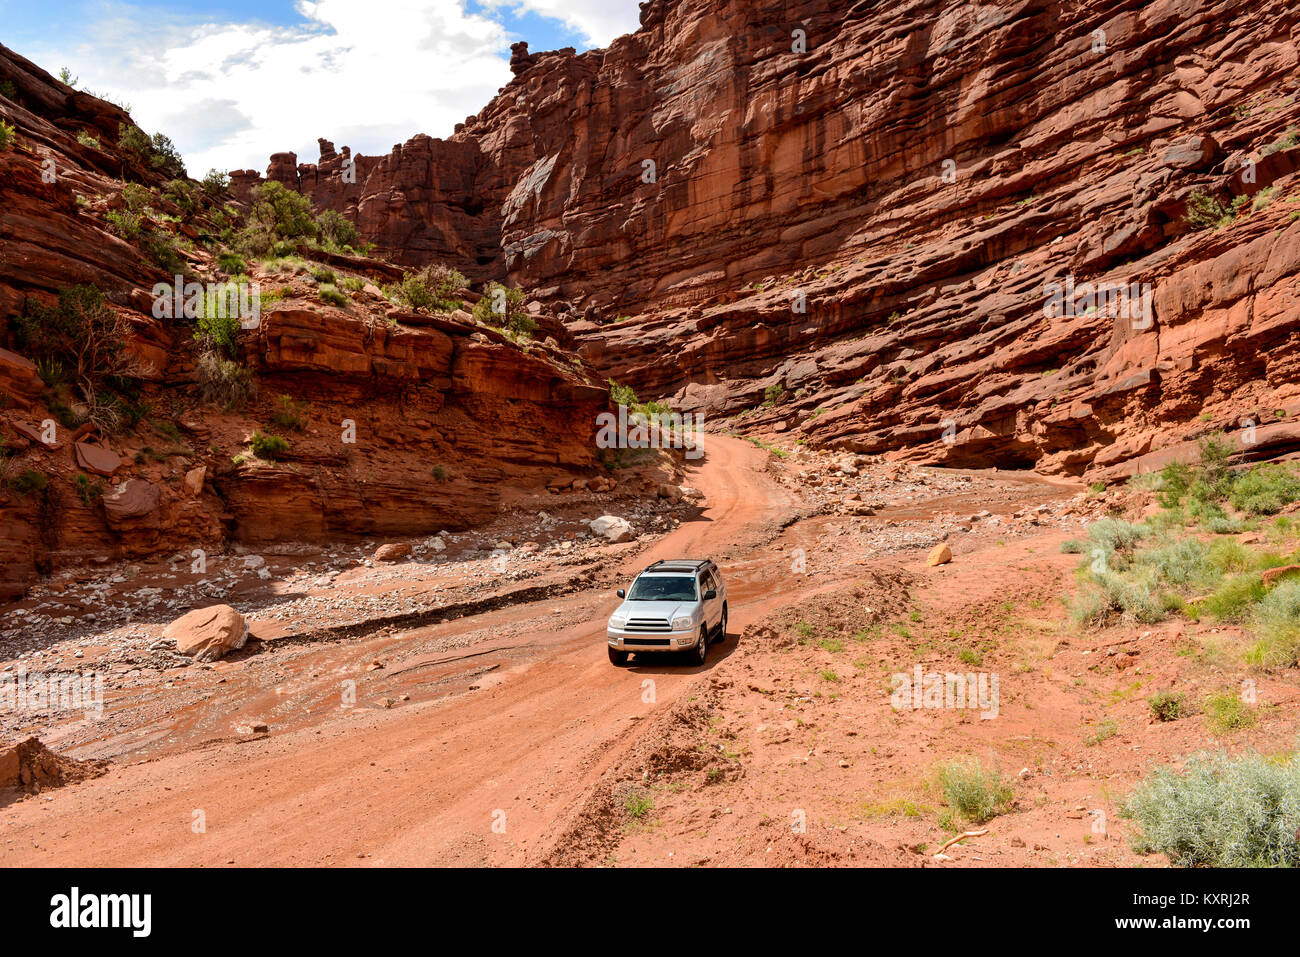 Desert Canyon Road - Un véhicule SUV 4X4 est de passage sur un ruisseau de printemps sur un chemin dans un canyon escarpé près de Colorado River Scenic Byway, Moab, Utah. Banque D'Images